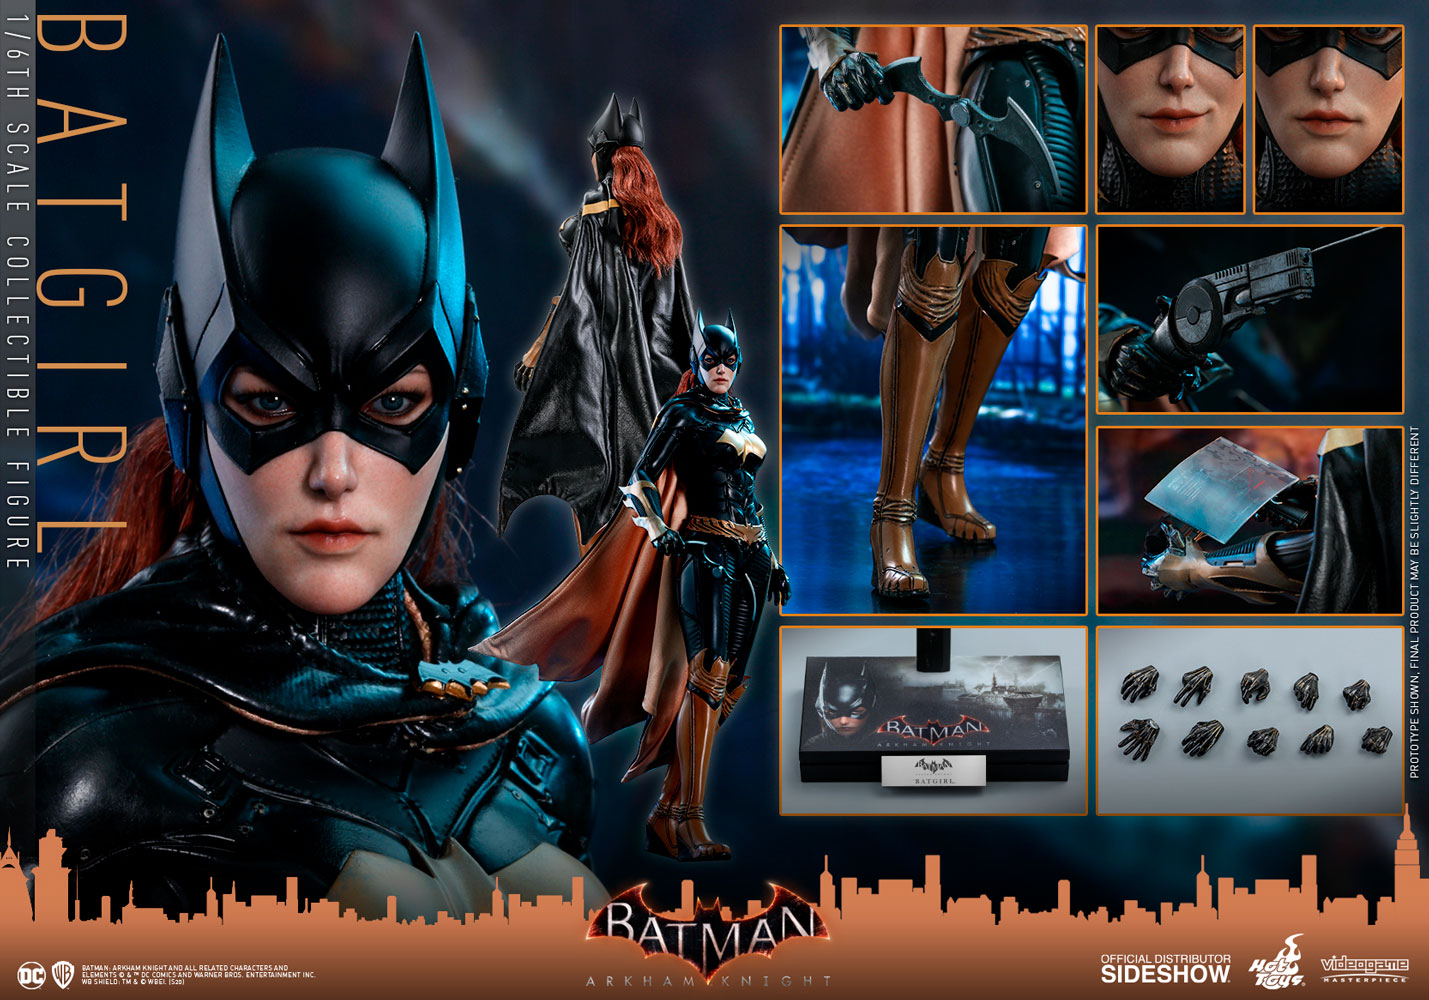 Hot Toys Batman Arkham Knight Batgirl